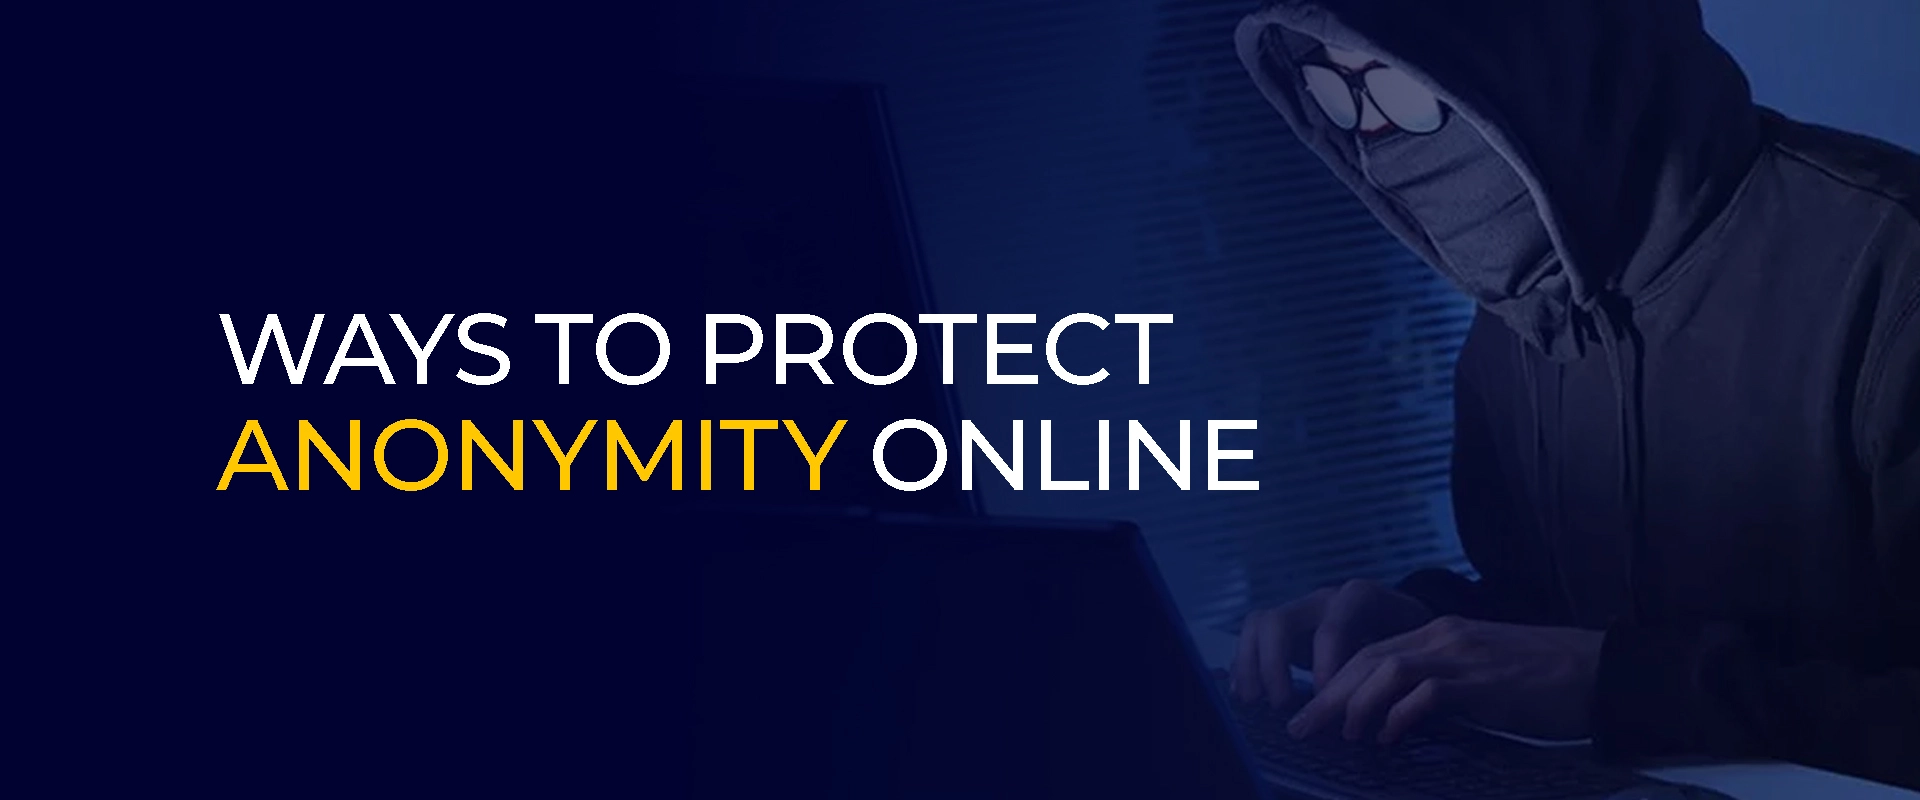 Manieren om anonimiteit online te beschermen